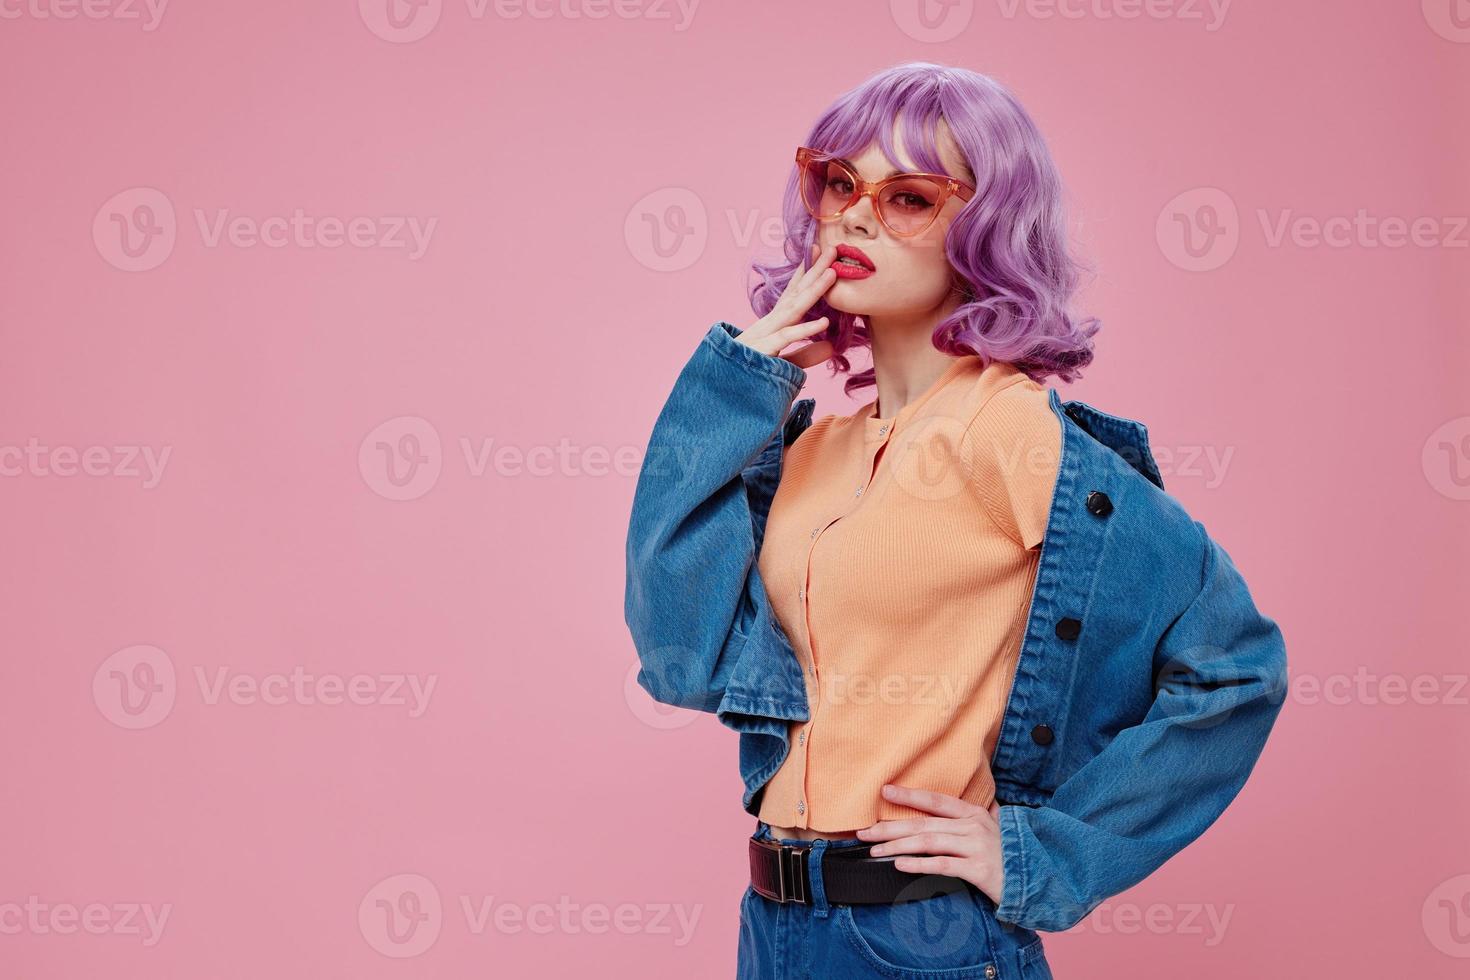 mooi jong vrouw denim kleding mode poseren pet roze bril kleur achtergrond ongewijzigd foto